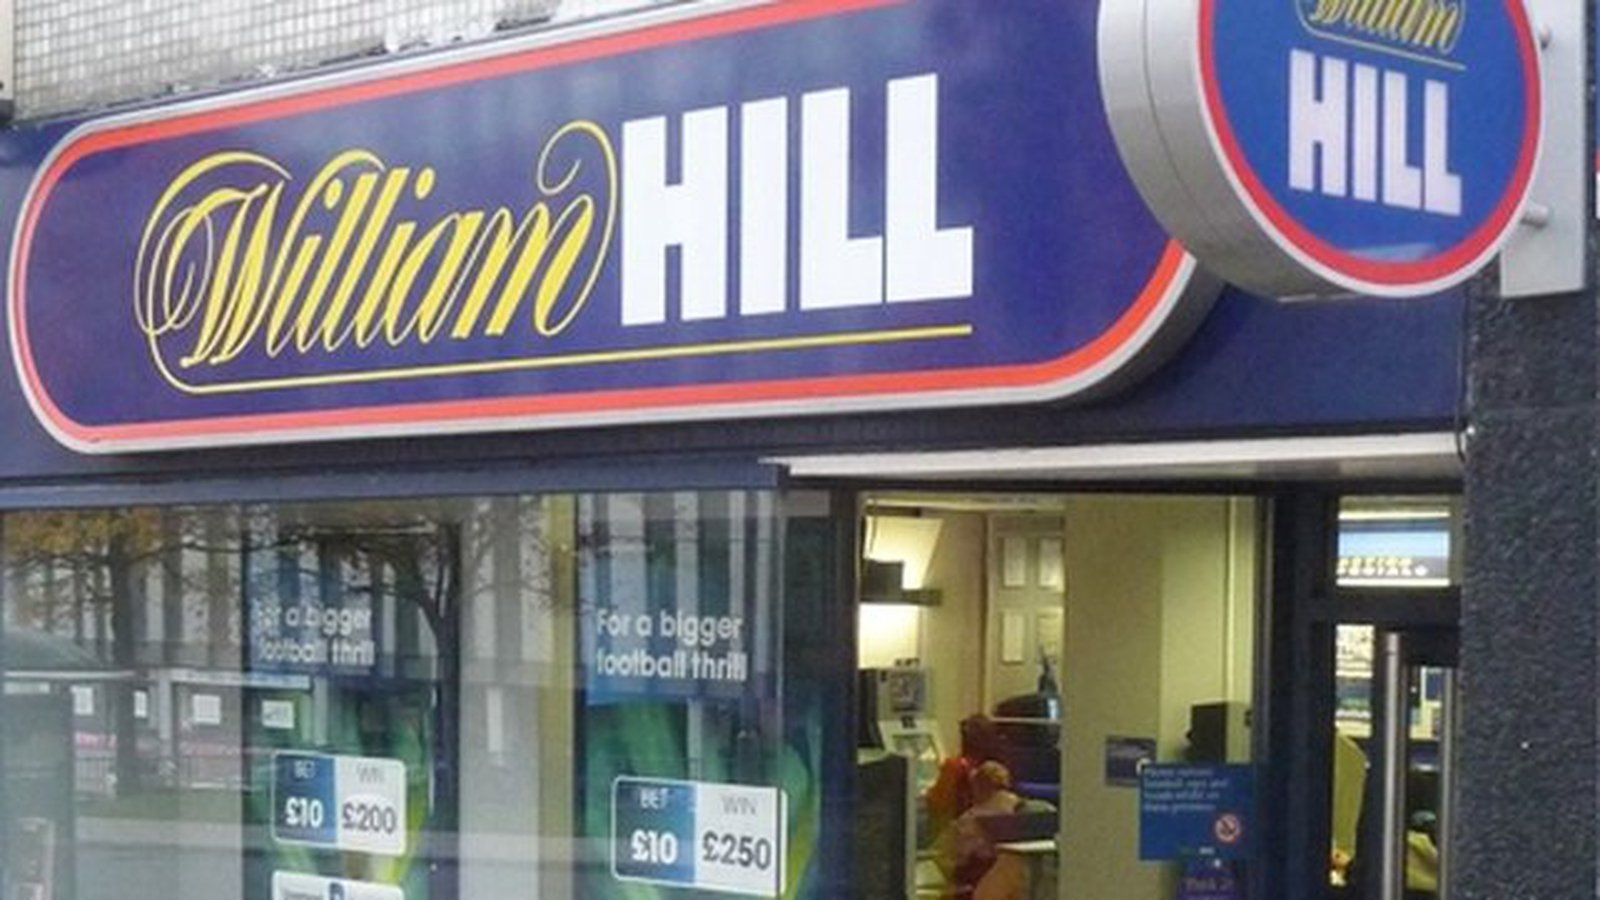 William hill shop radio